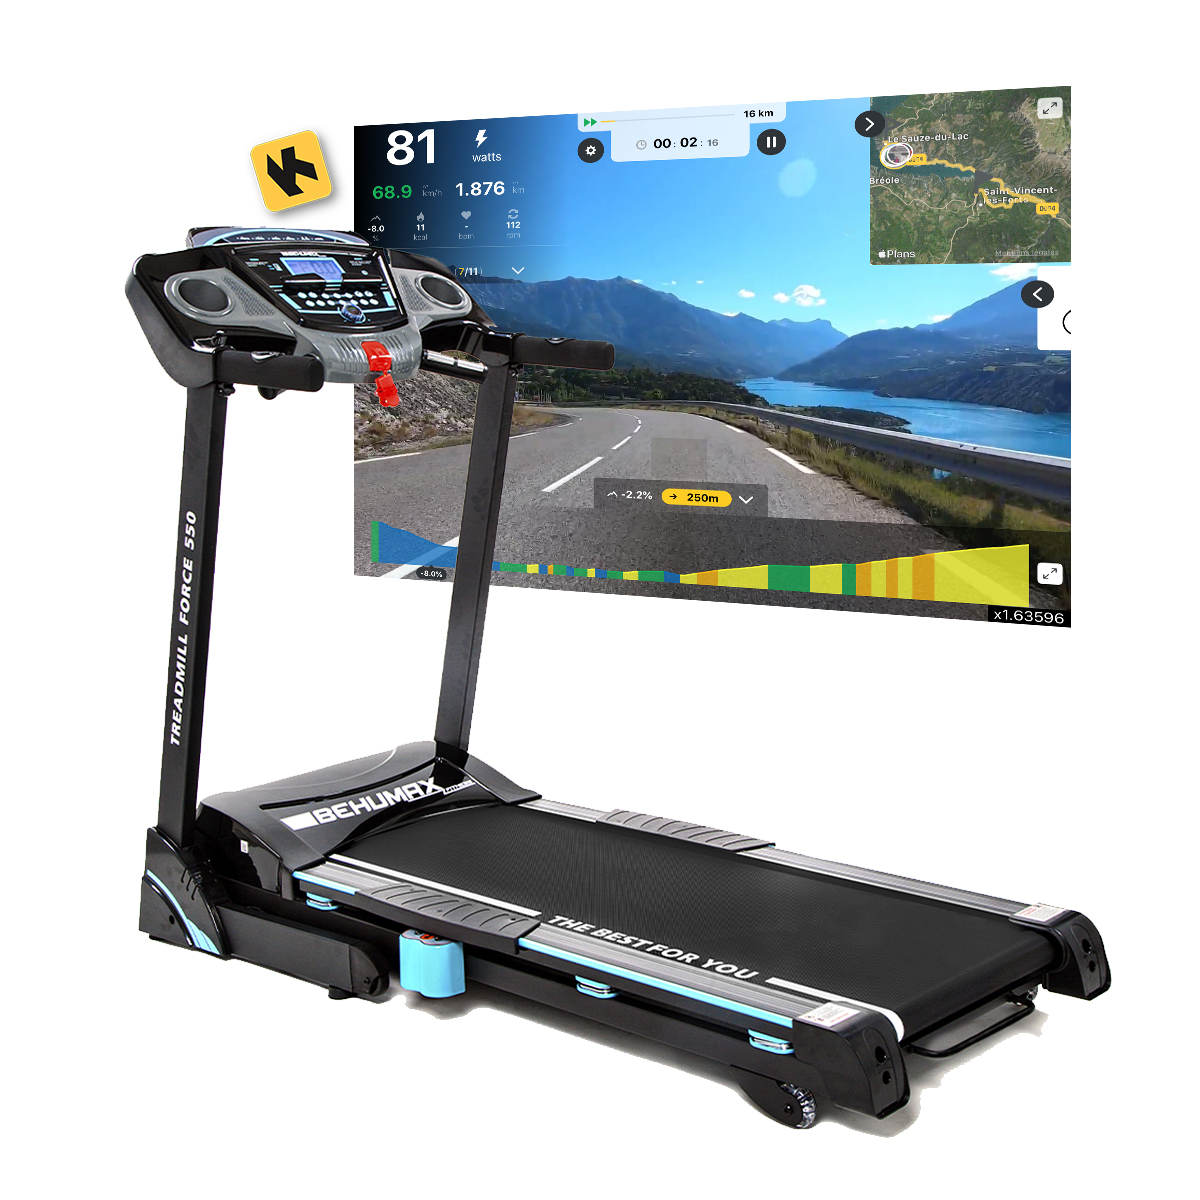 Passadeira Treadmill Force 350 Behumax con monitor LED